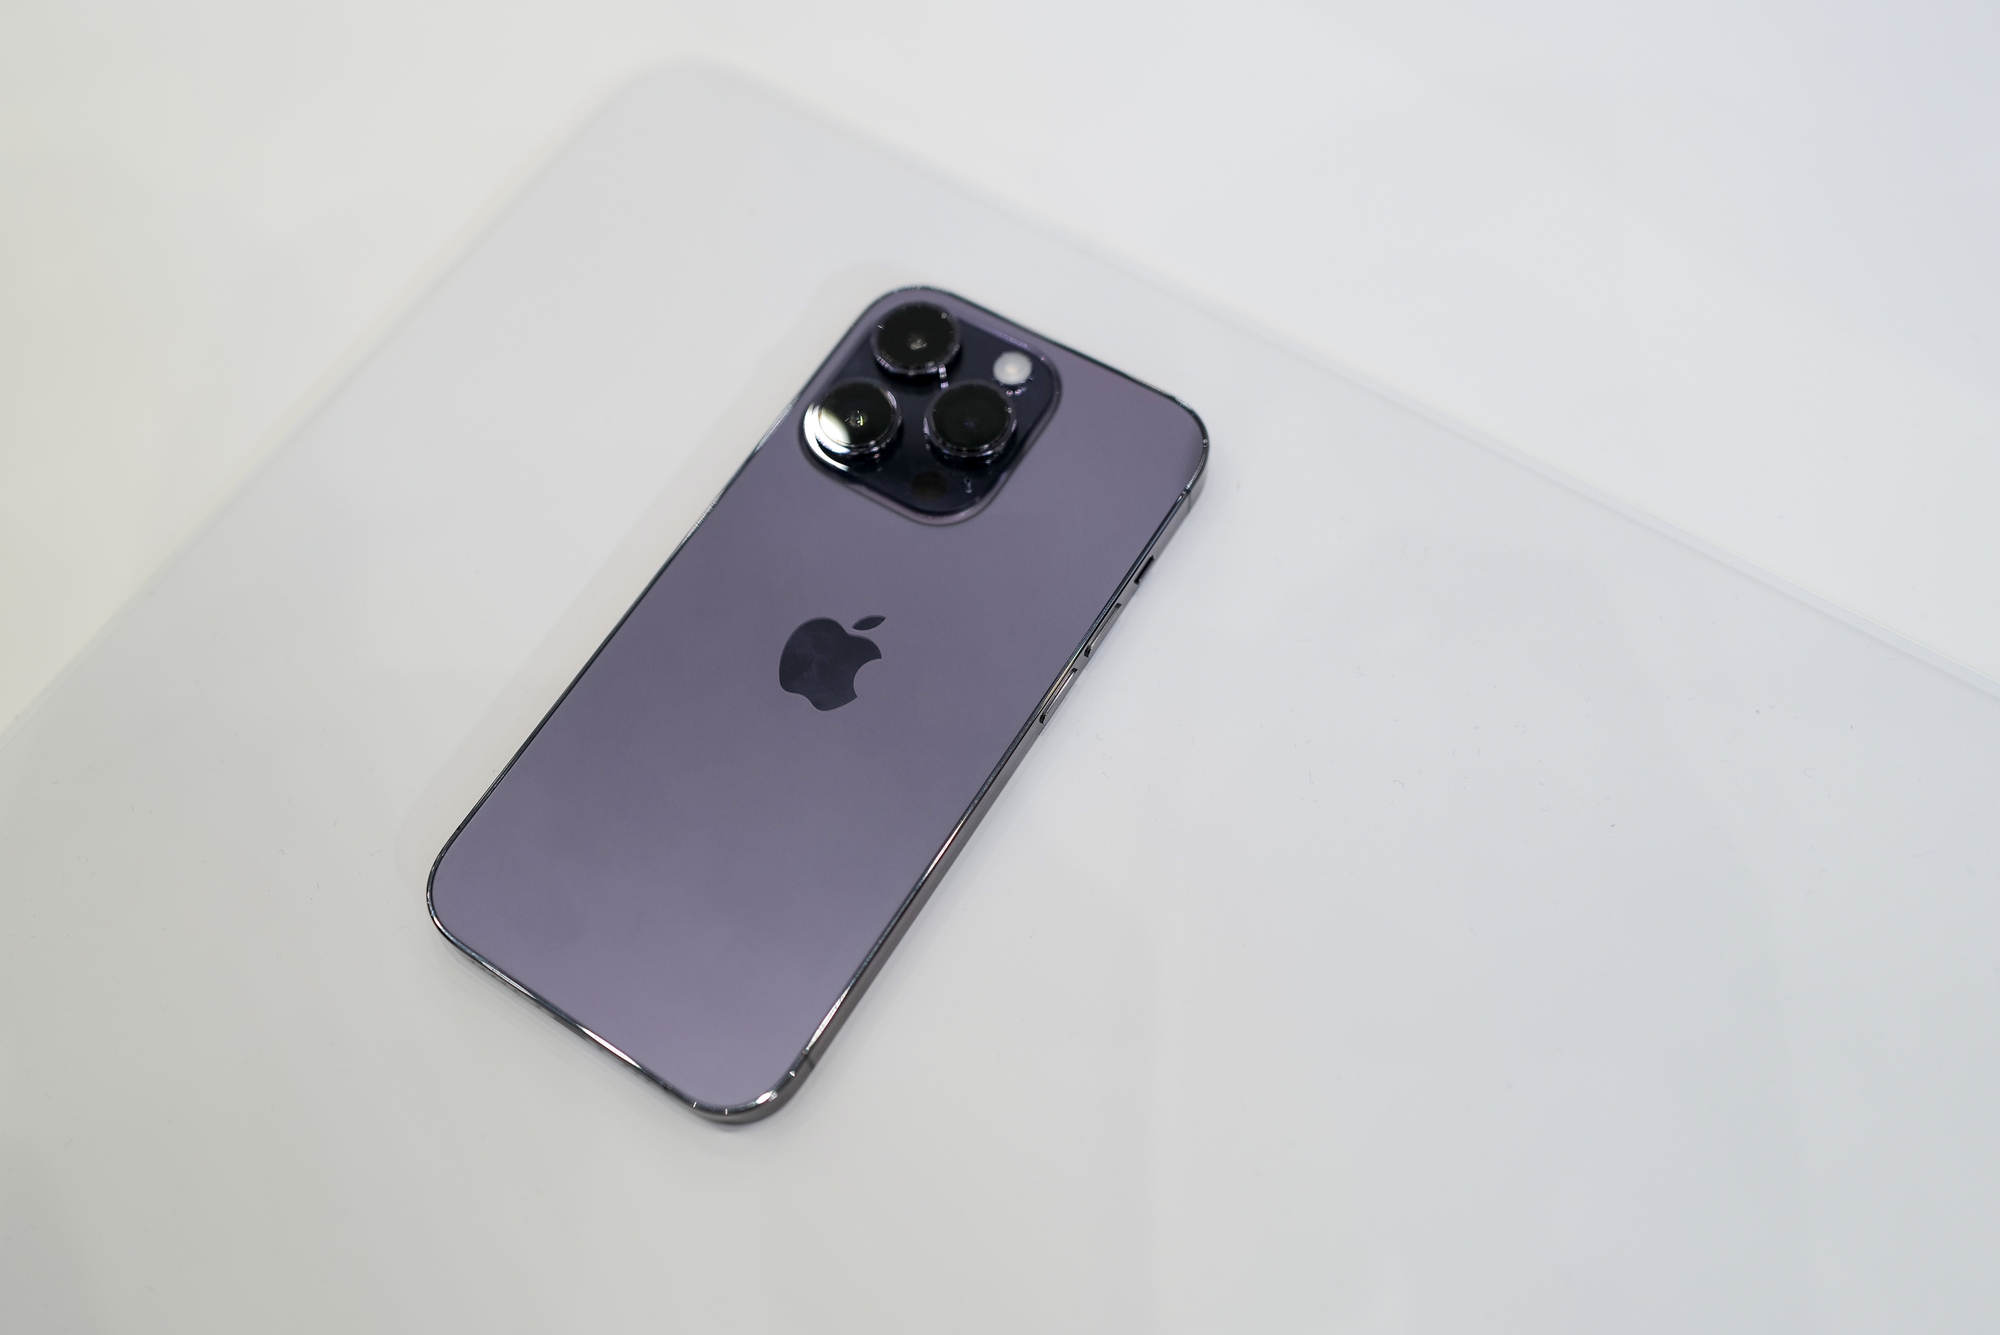 iPhone 14 Pro Max sắp được ra mắt và đã có phiên bản màu tím đầy cuốn hút! Với thiết kế đẹp mắt và tính năng vượt trội, phiên bản màu tím chắc chắn sẽ làm bạn phải trầm trồ. Hãy đón xem để khám phá thêm những màu sắc lộng lẫy khác của iPhone 14 Pro Max.